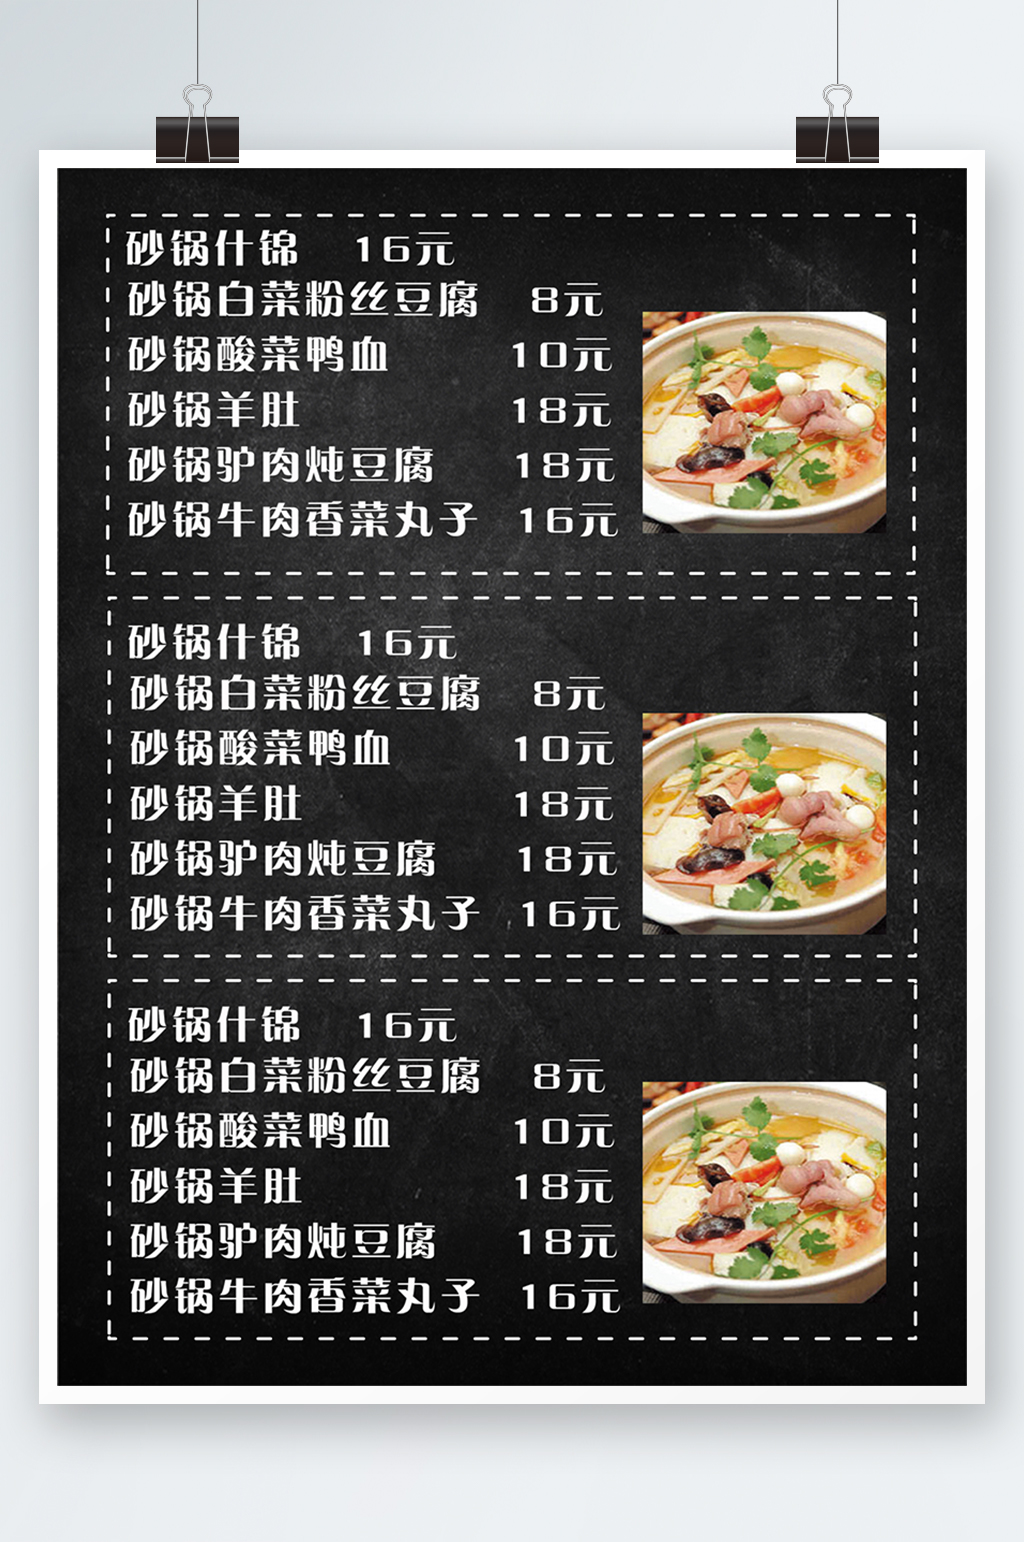 砂锅粥菜单与图片图片